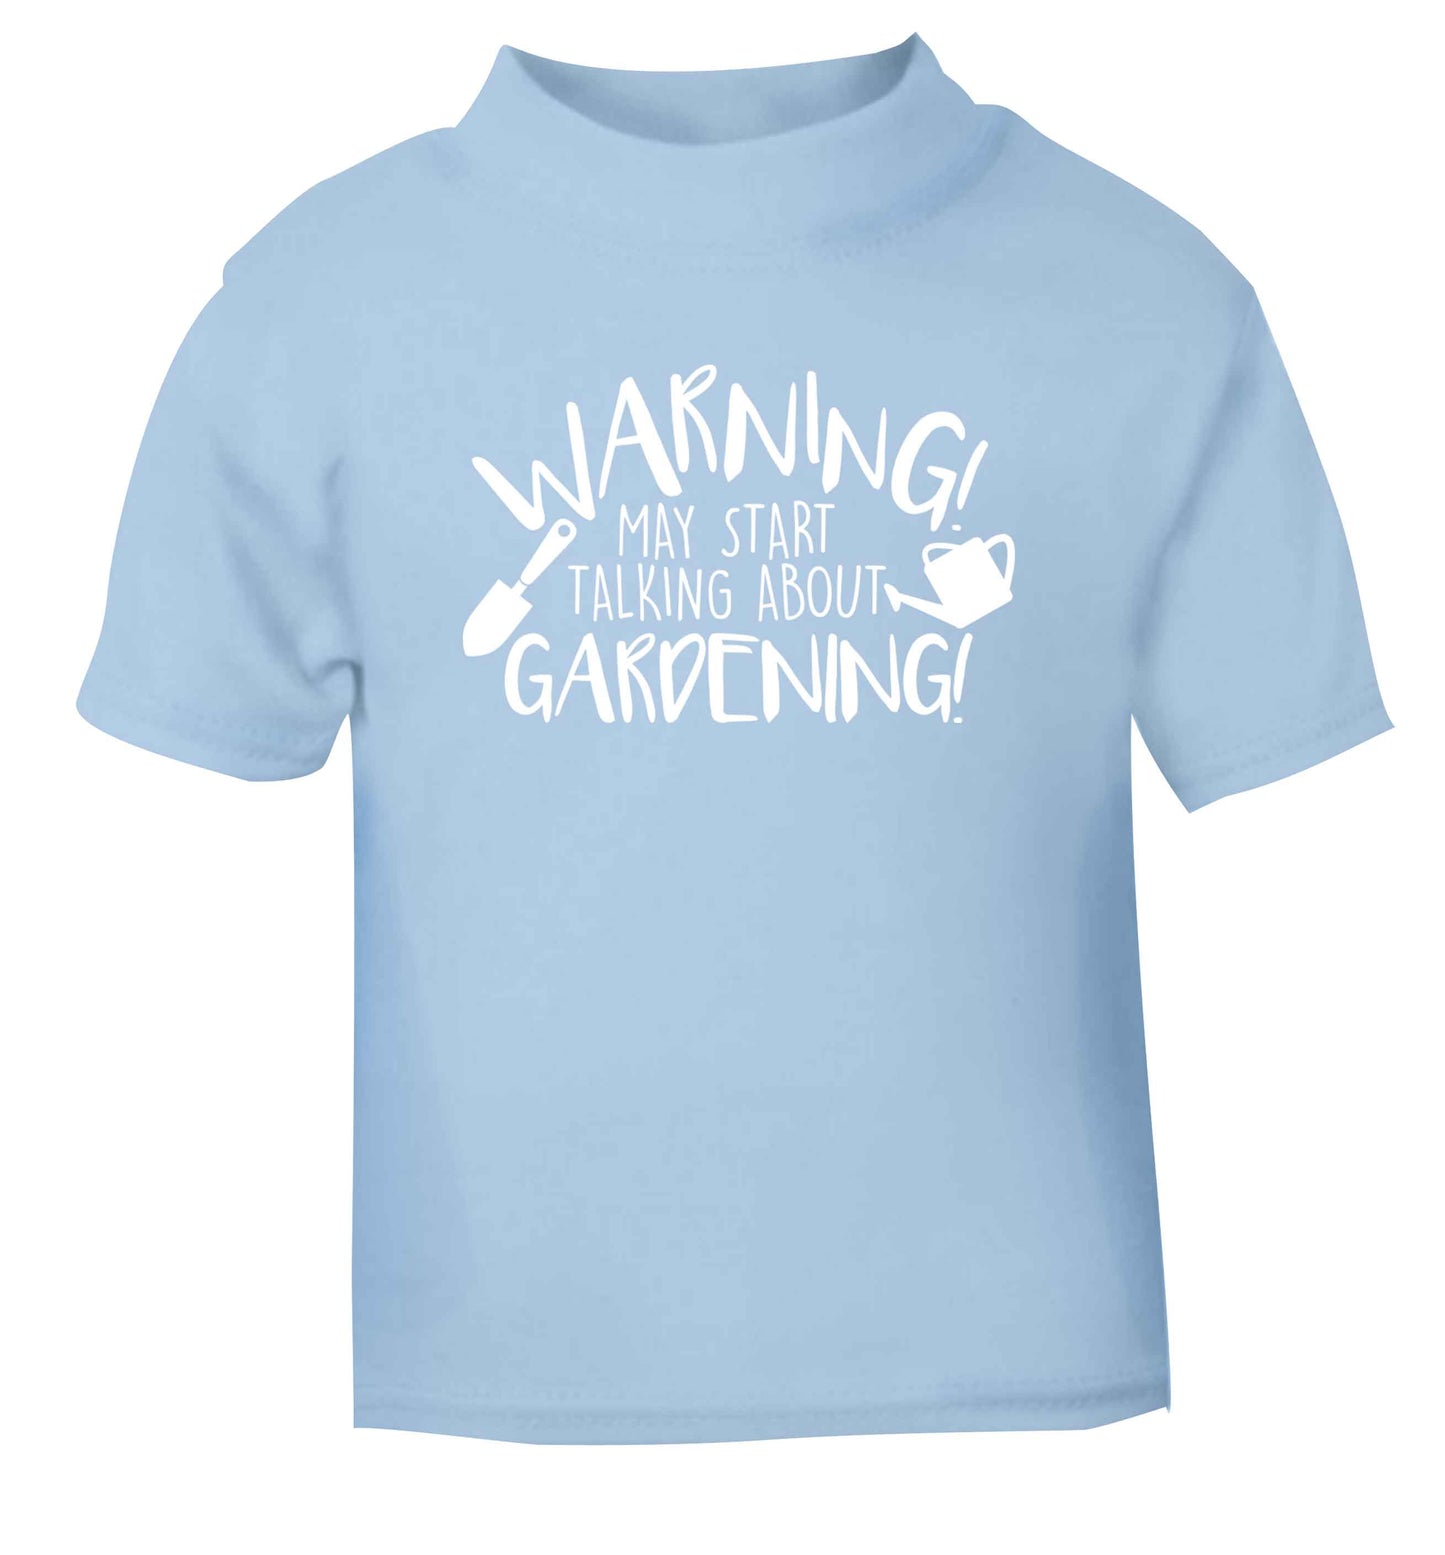 Warning may start talking about gardening light blue Baby Toddler Tshirt 2 Years